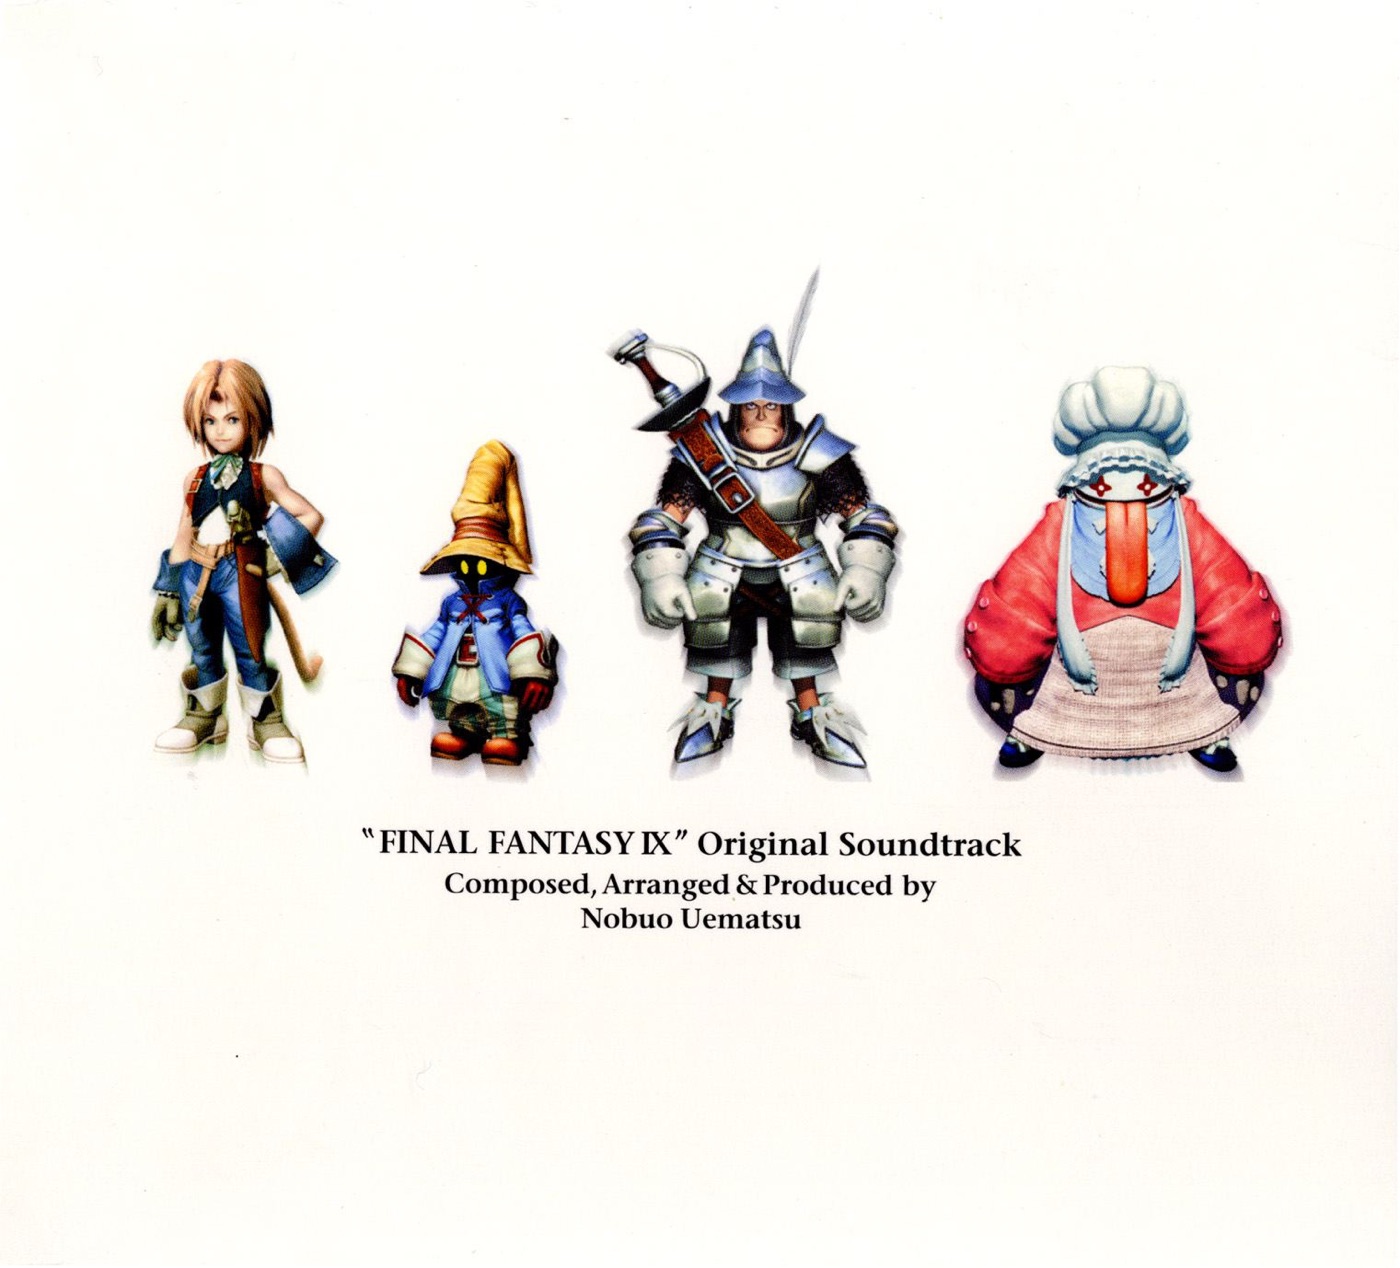 FINAL FANTASY IX (Original Soundtrack) by Nobuo Uematsu